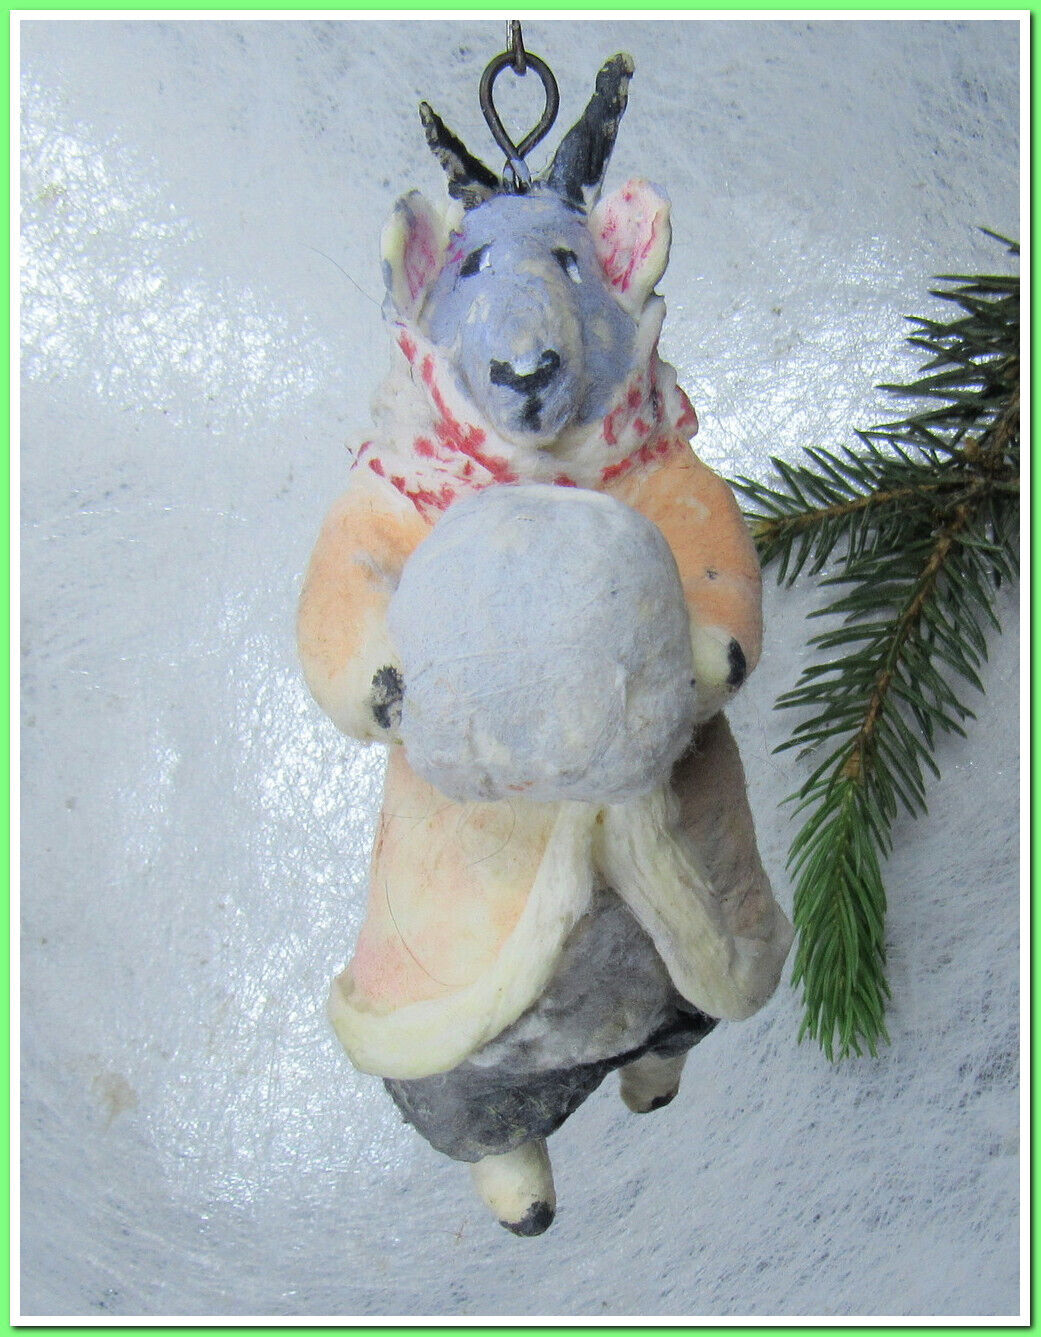 🎄Vintage antique Christmas spun cotton ornament figure #19524